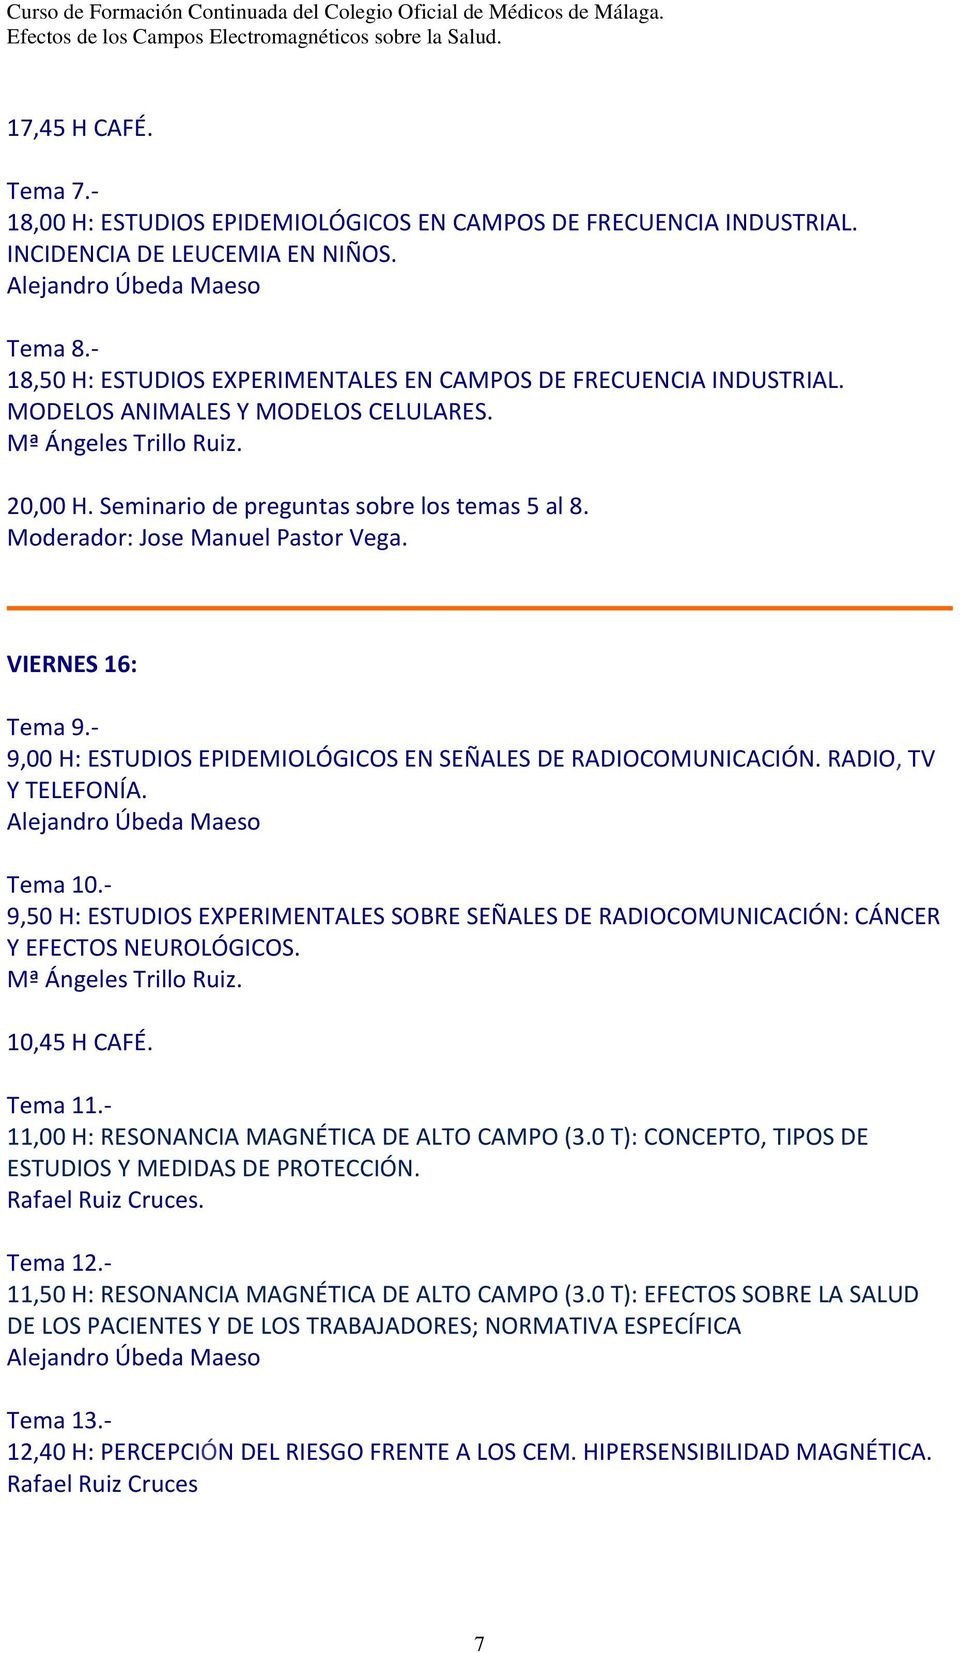 Moderador: Jose Manuel Pastor Vega. VIERNES 16: Tema 9. 9,00 H: ESTUDIOS EPIDEMIOLÓGICOS EN SEÑALES DE RADIOCOMUNICACIÓN. RADIO, TV Y TELEFONÍA. Tema 10.